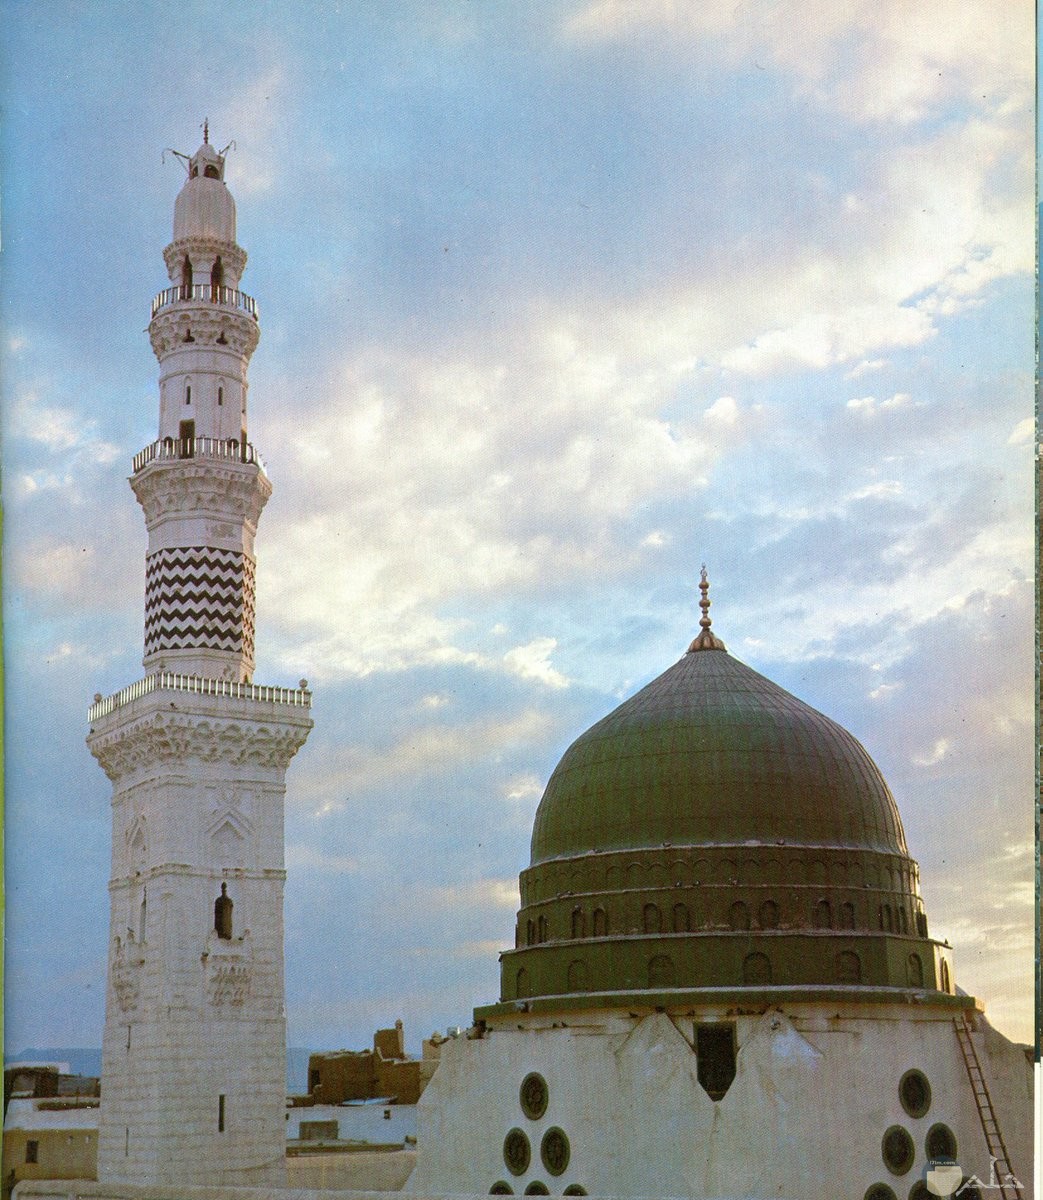 مأذنة و القبة بالمسجد النبوى الشريف.